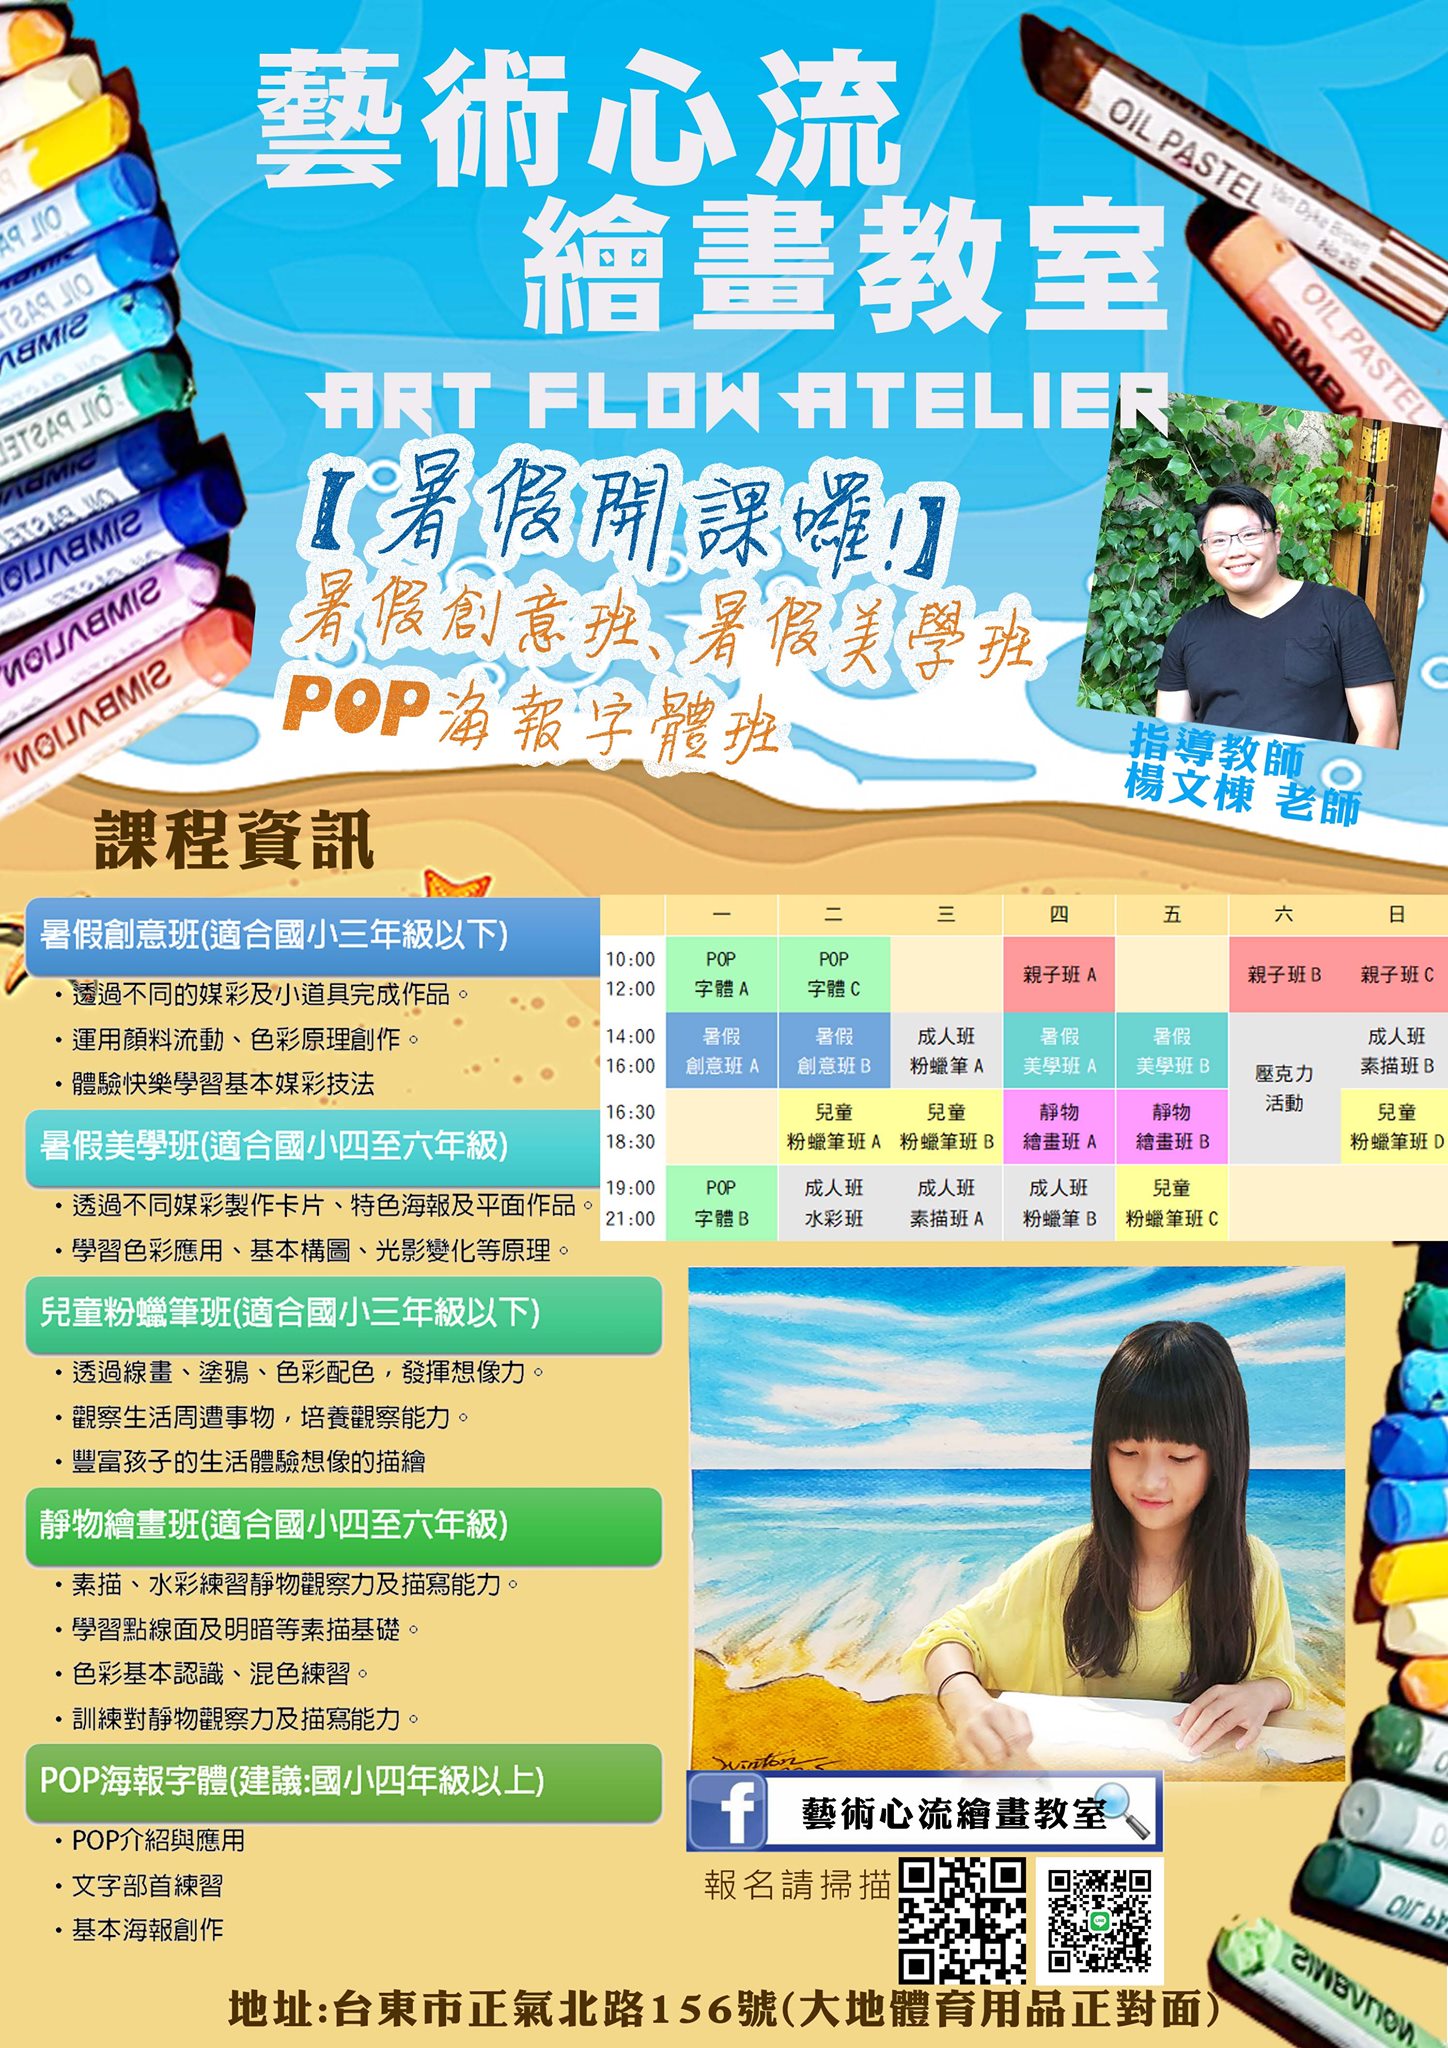 【課程】台東藝術心流繪畫教室暑假班